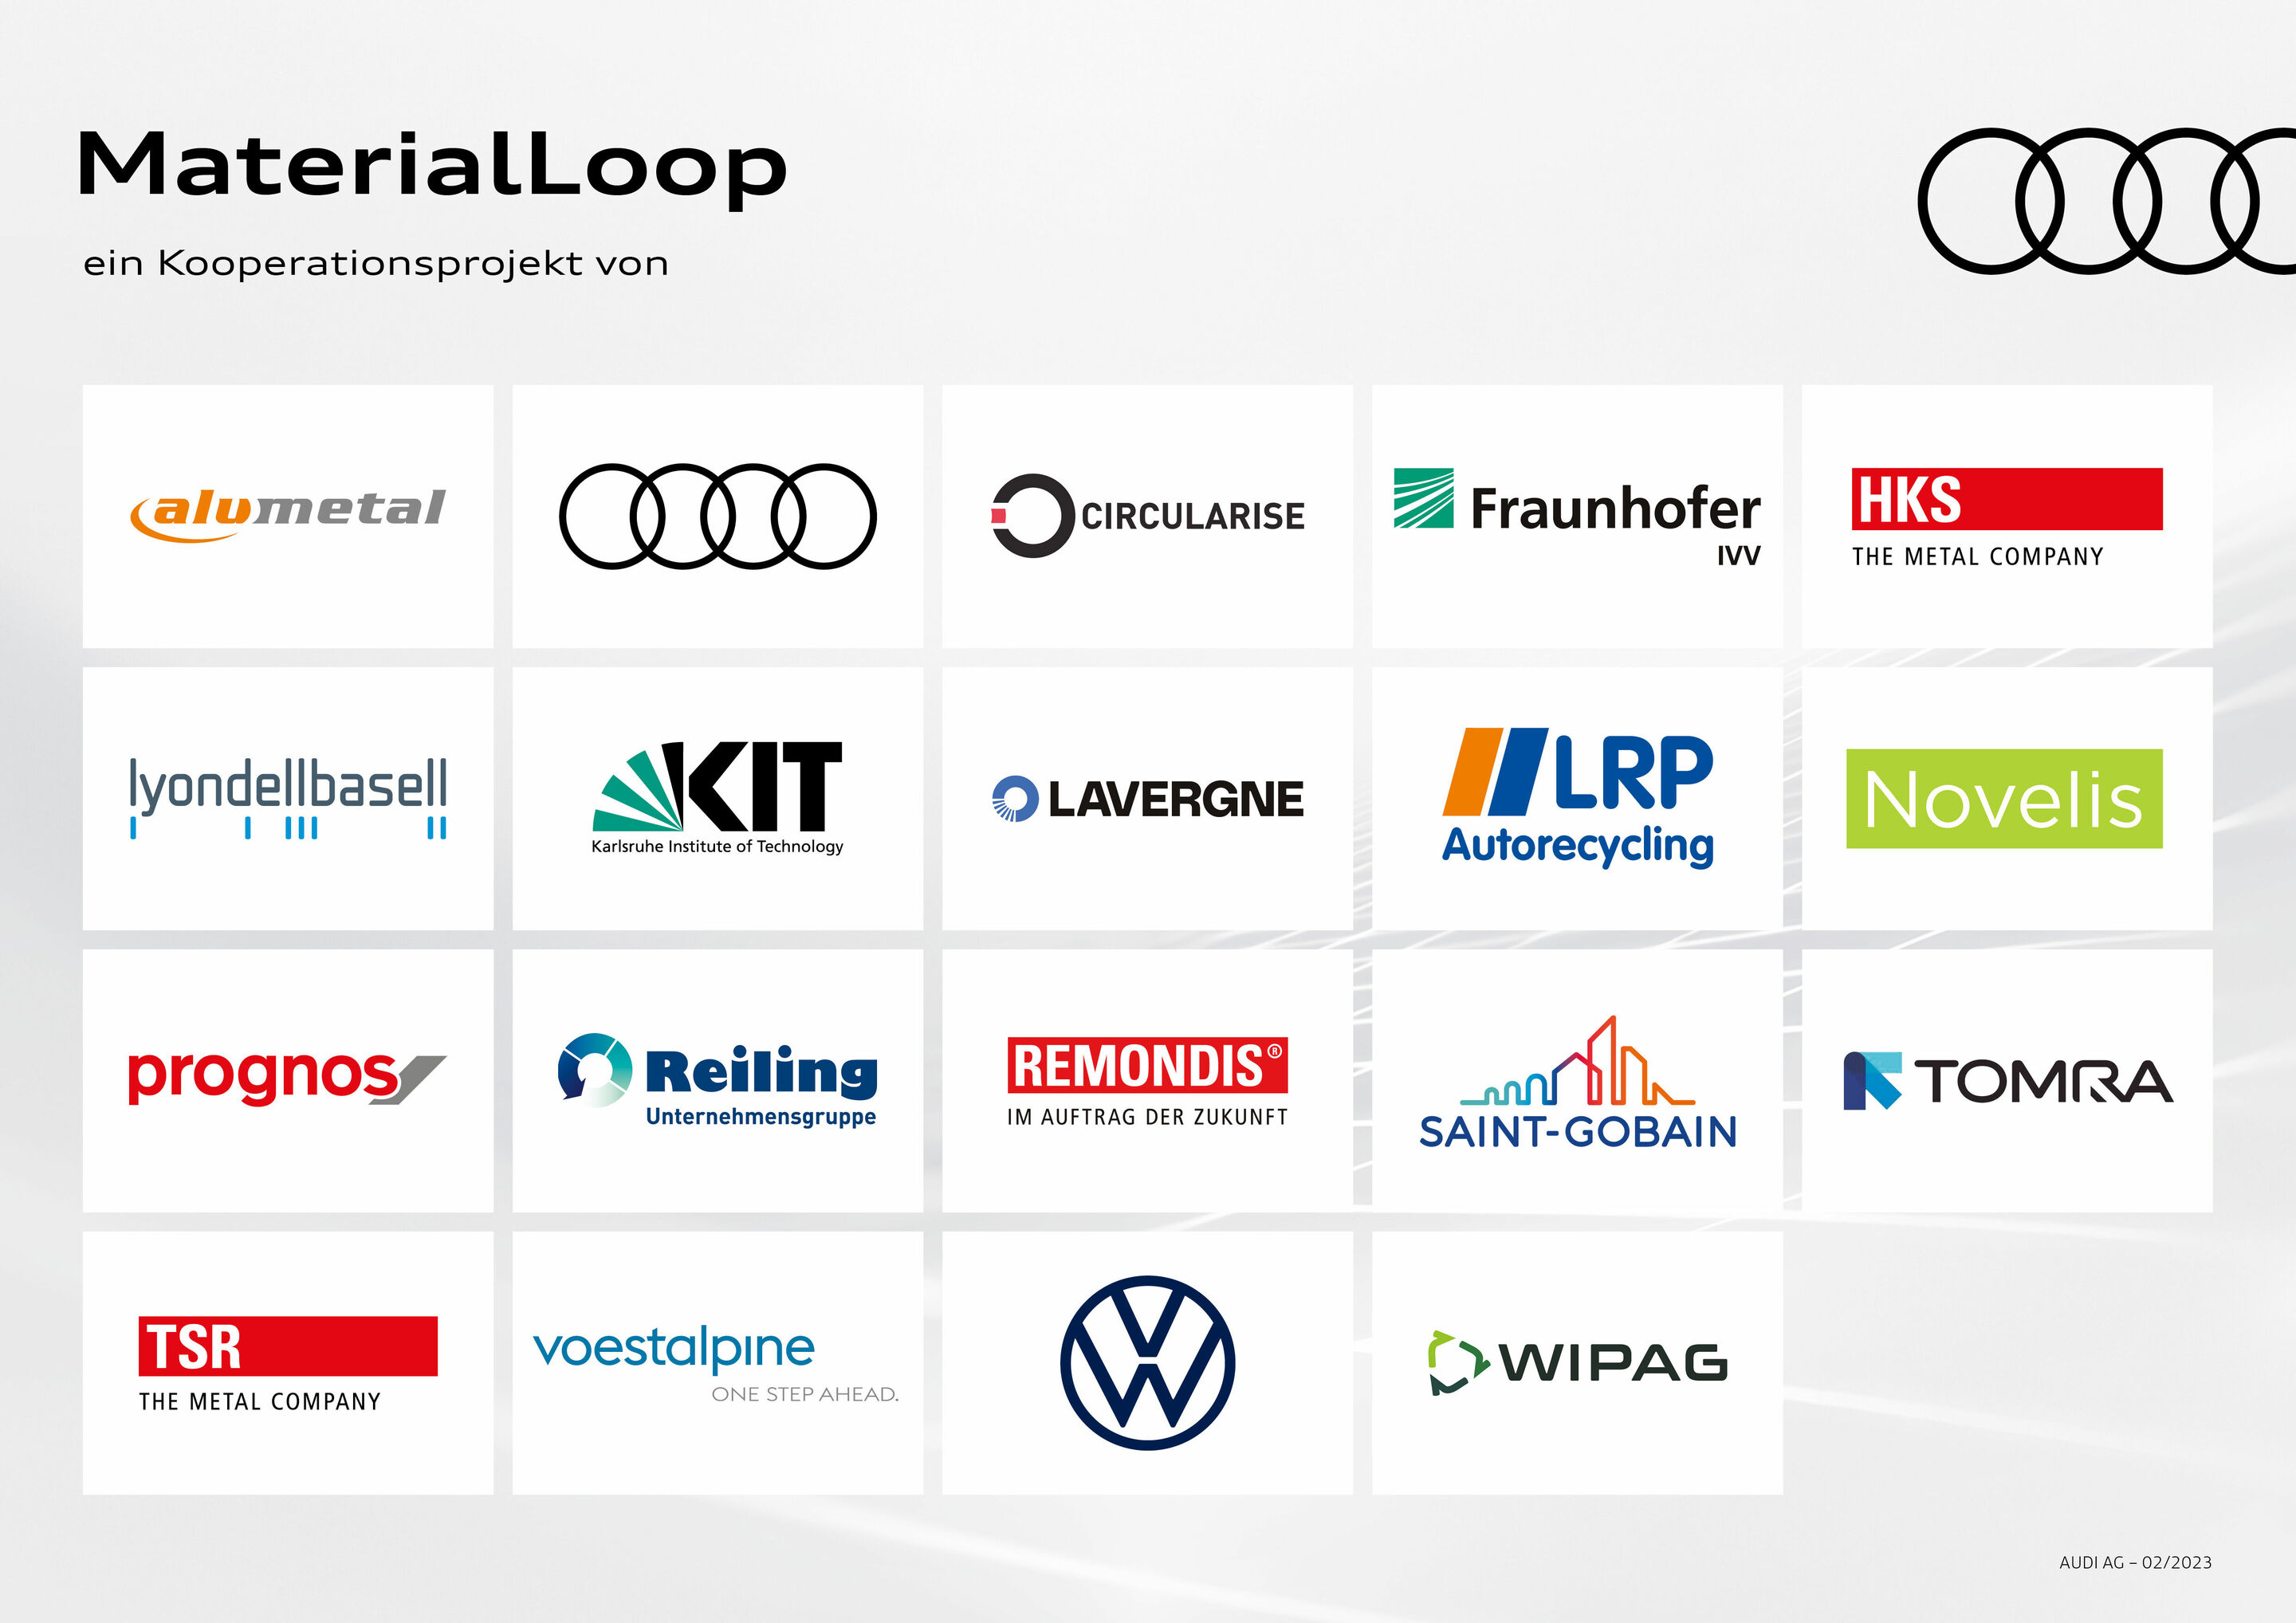 Das Projekt MaterialLoop testet Kreislaufwirtschaftspotenziale von Altfahrzeugen